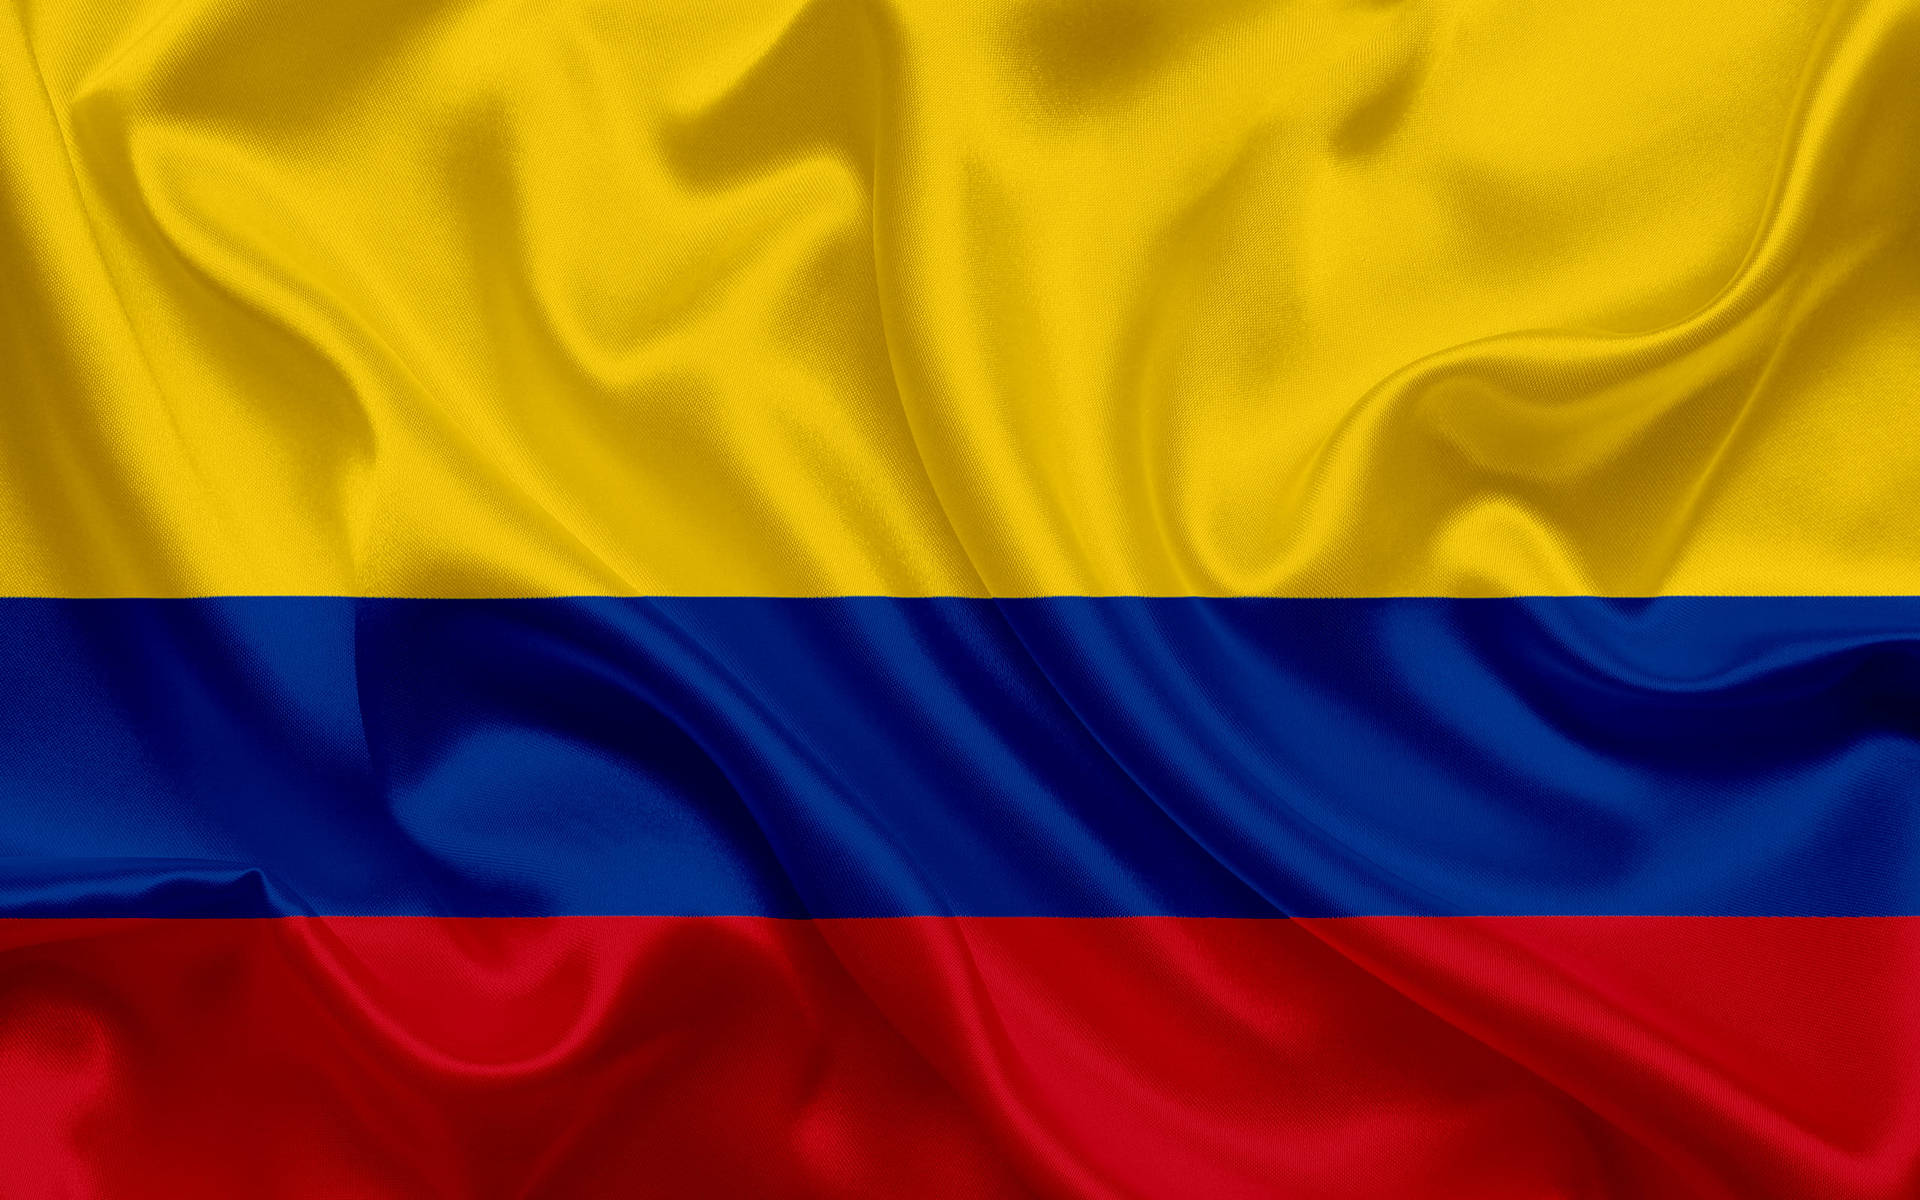 Imágenes De La Bandera De Colombia